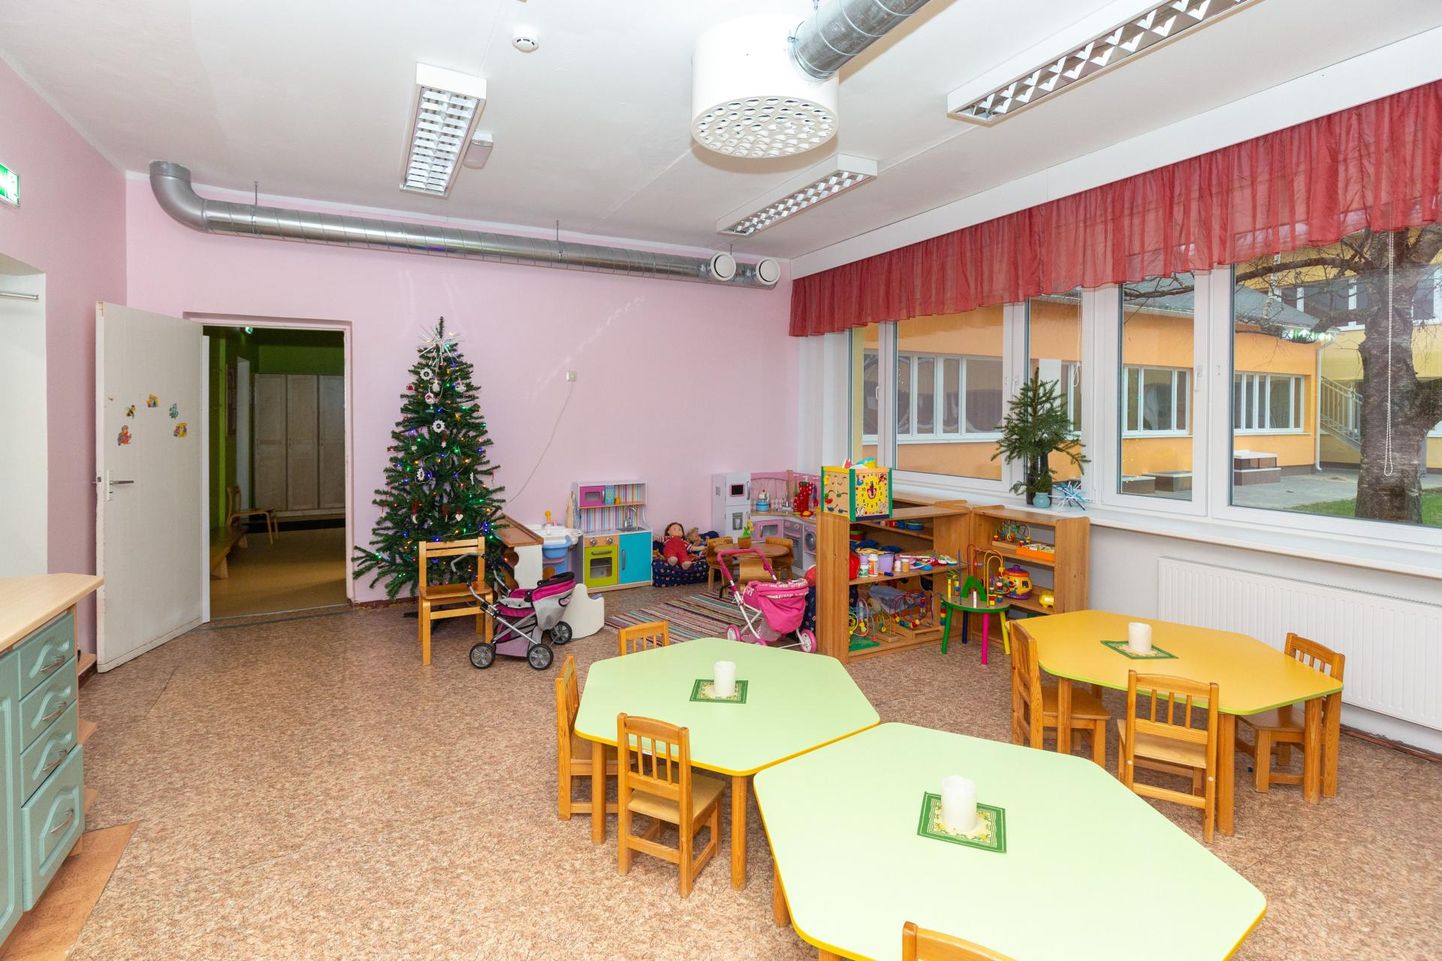 Väljast renoveeritud Männimäe lasteaias ootab veel mitu ruumi põhjalikku remonti.